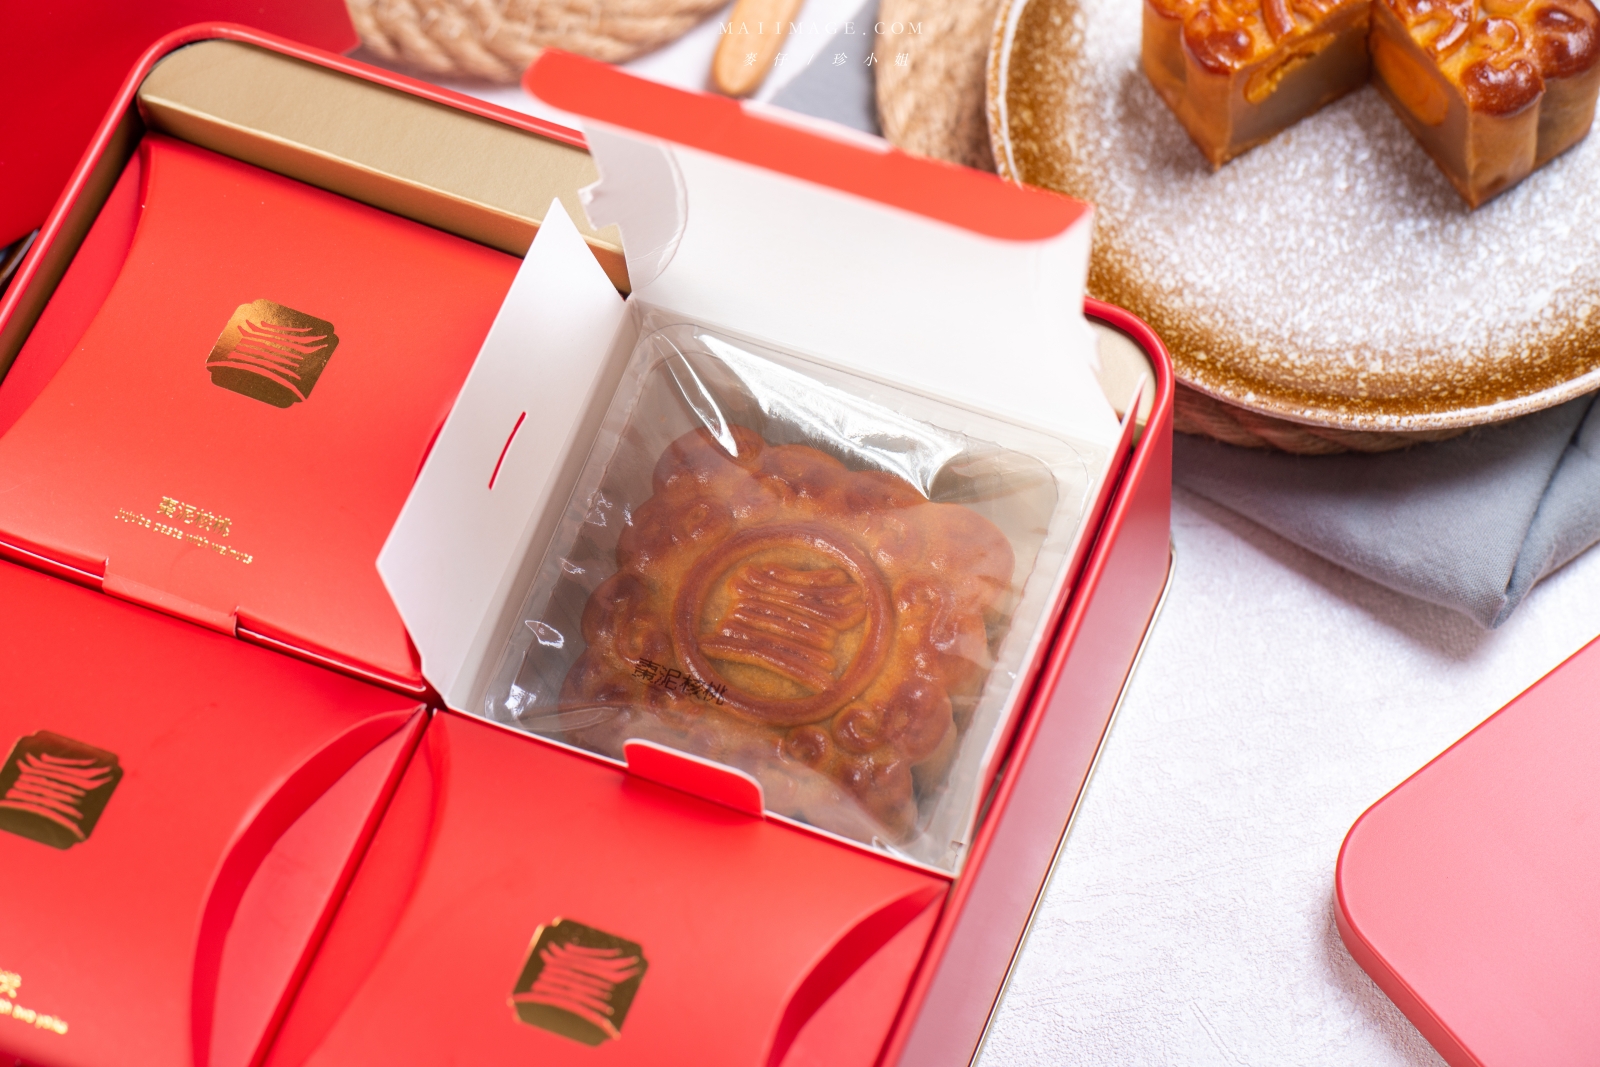 你吃過會唱歌的月餅嗎？今年換點不一樣的月餅禮盒吧。圓山飯店全新推出『圓山音樂寶盒月餅』2021圓山月餅禮盒